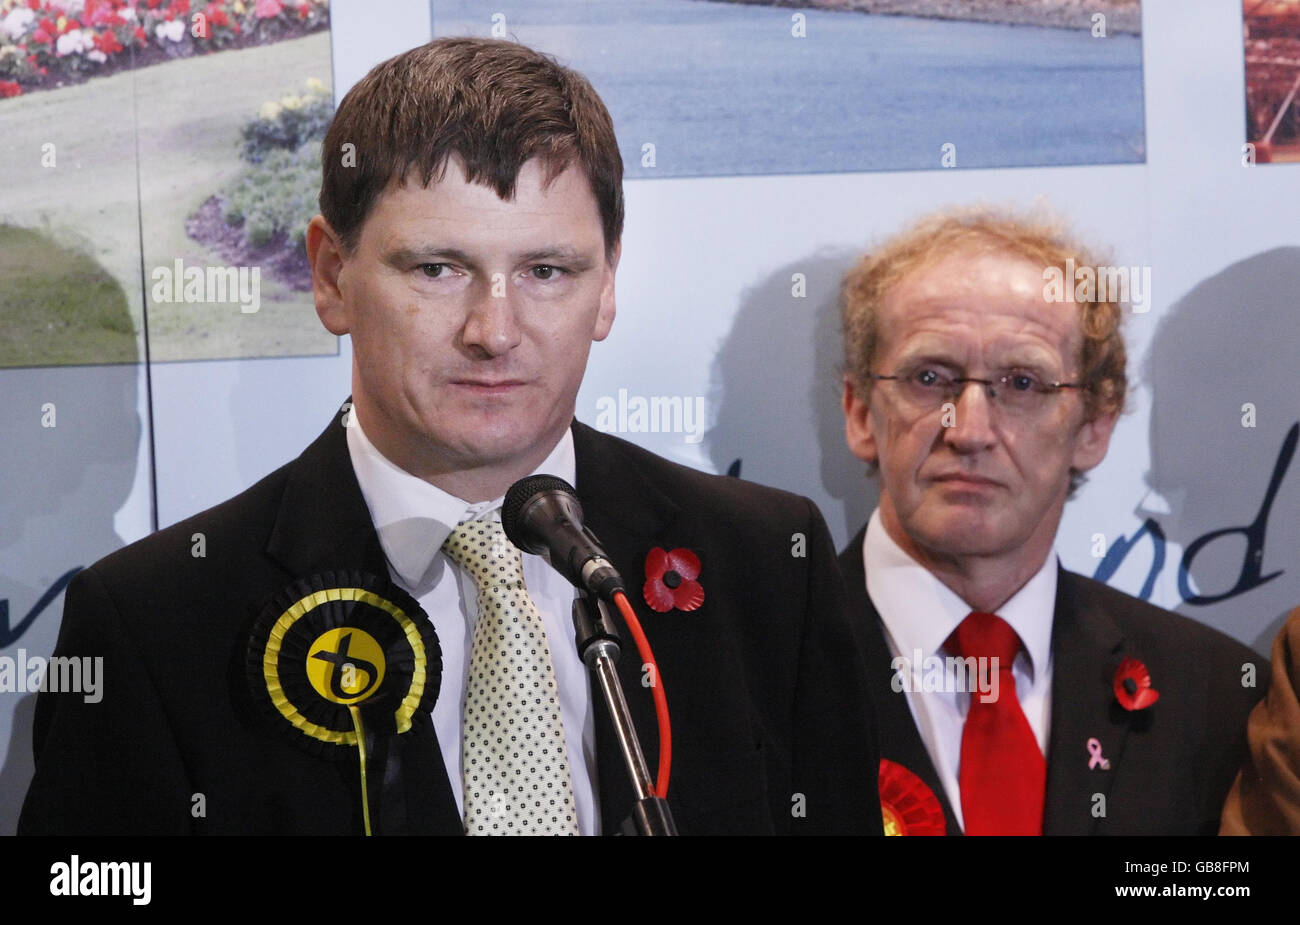 Il candidato dell'SNP Peter Grant (sinistra) e il candidato laburista Lindsay Roy (destra) durante il conteggio dei voti per la sottoelezione di Glenrothes al Fife Institute di Glenrothes. Foto Stock